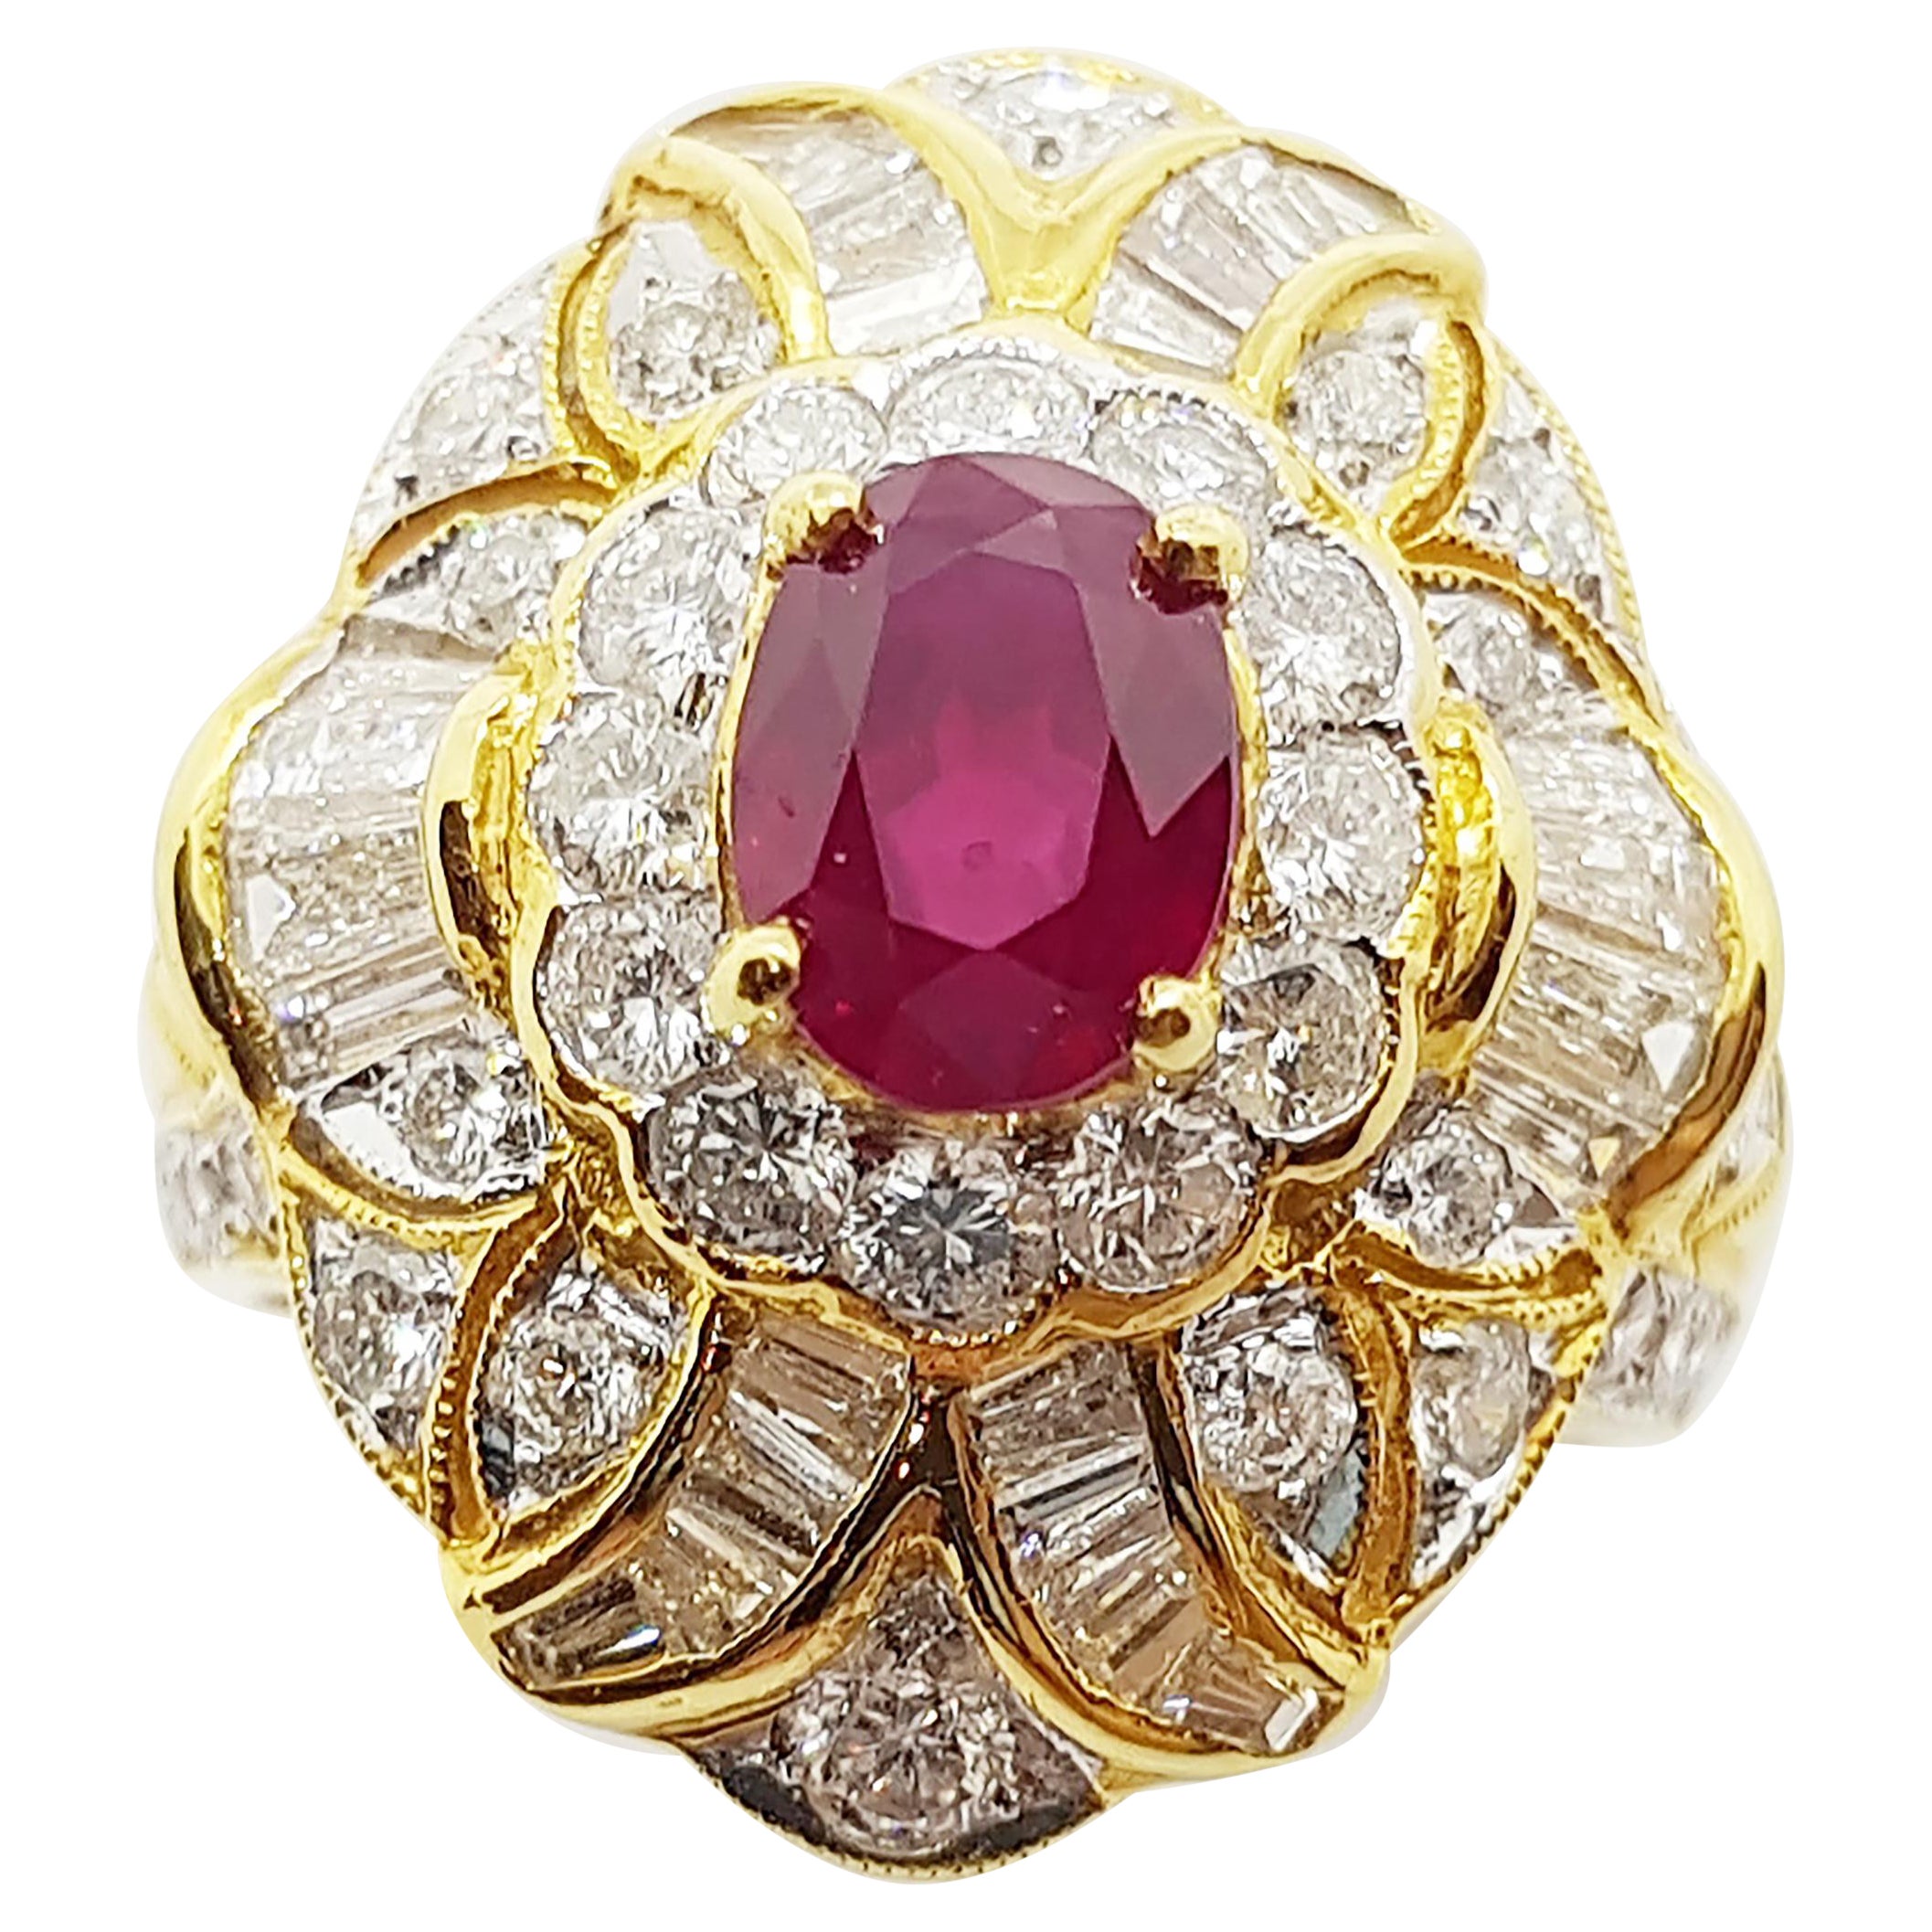 Rubin-Ring mit Diamanten in 18 Karat Gold gefasst